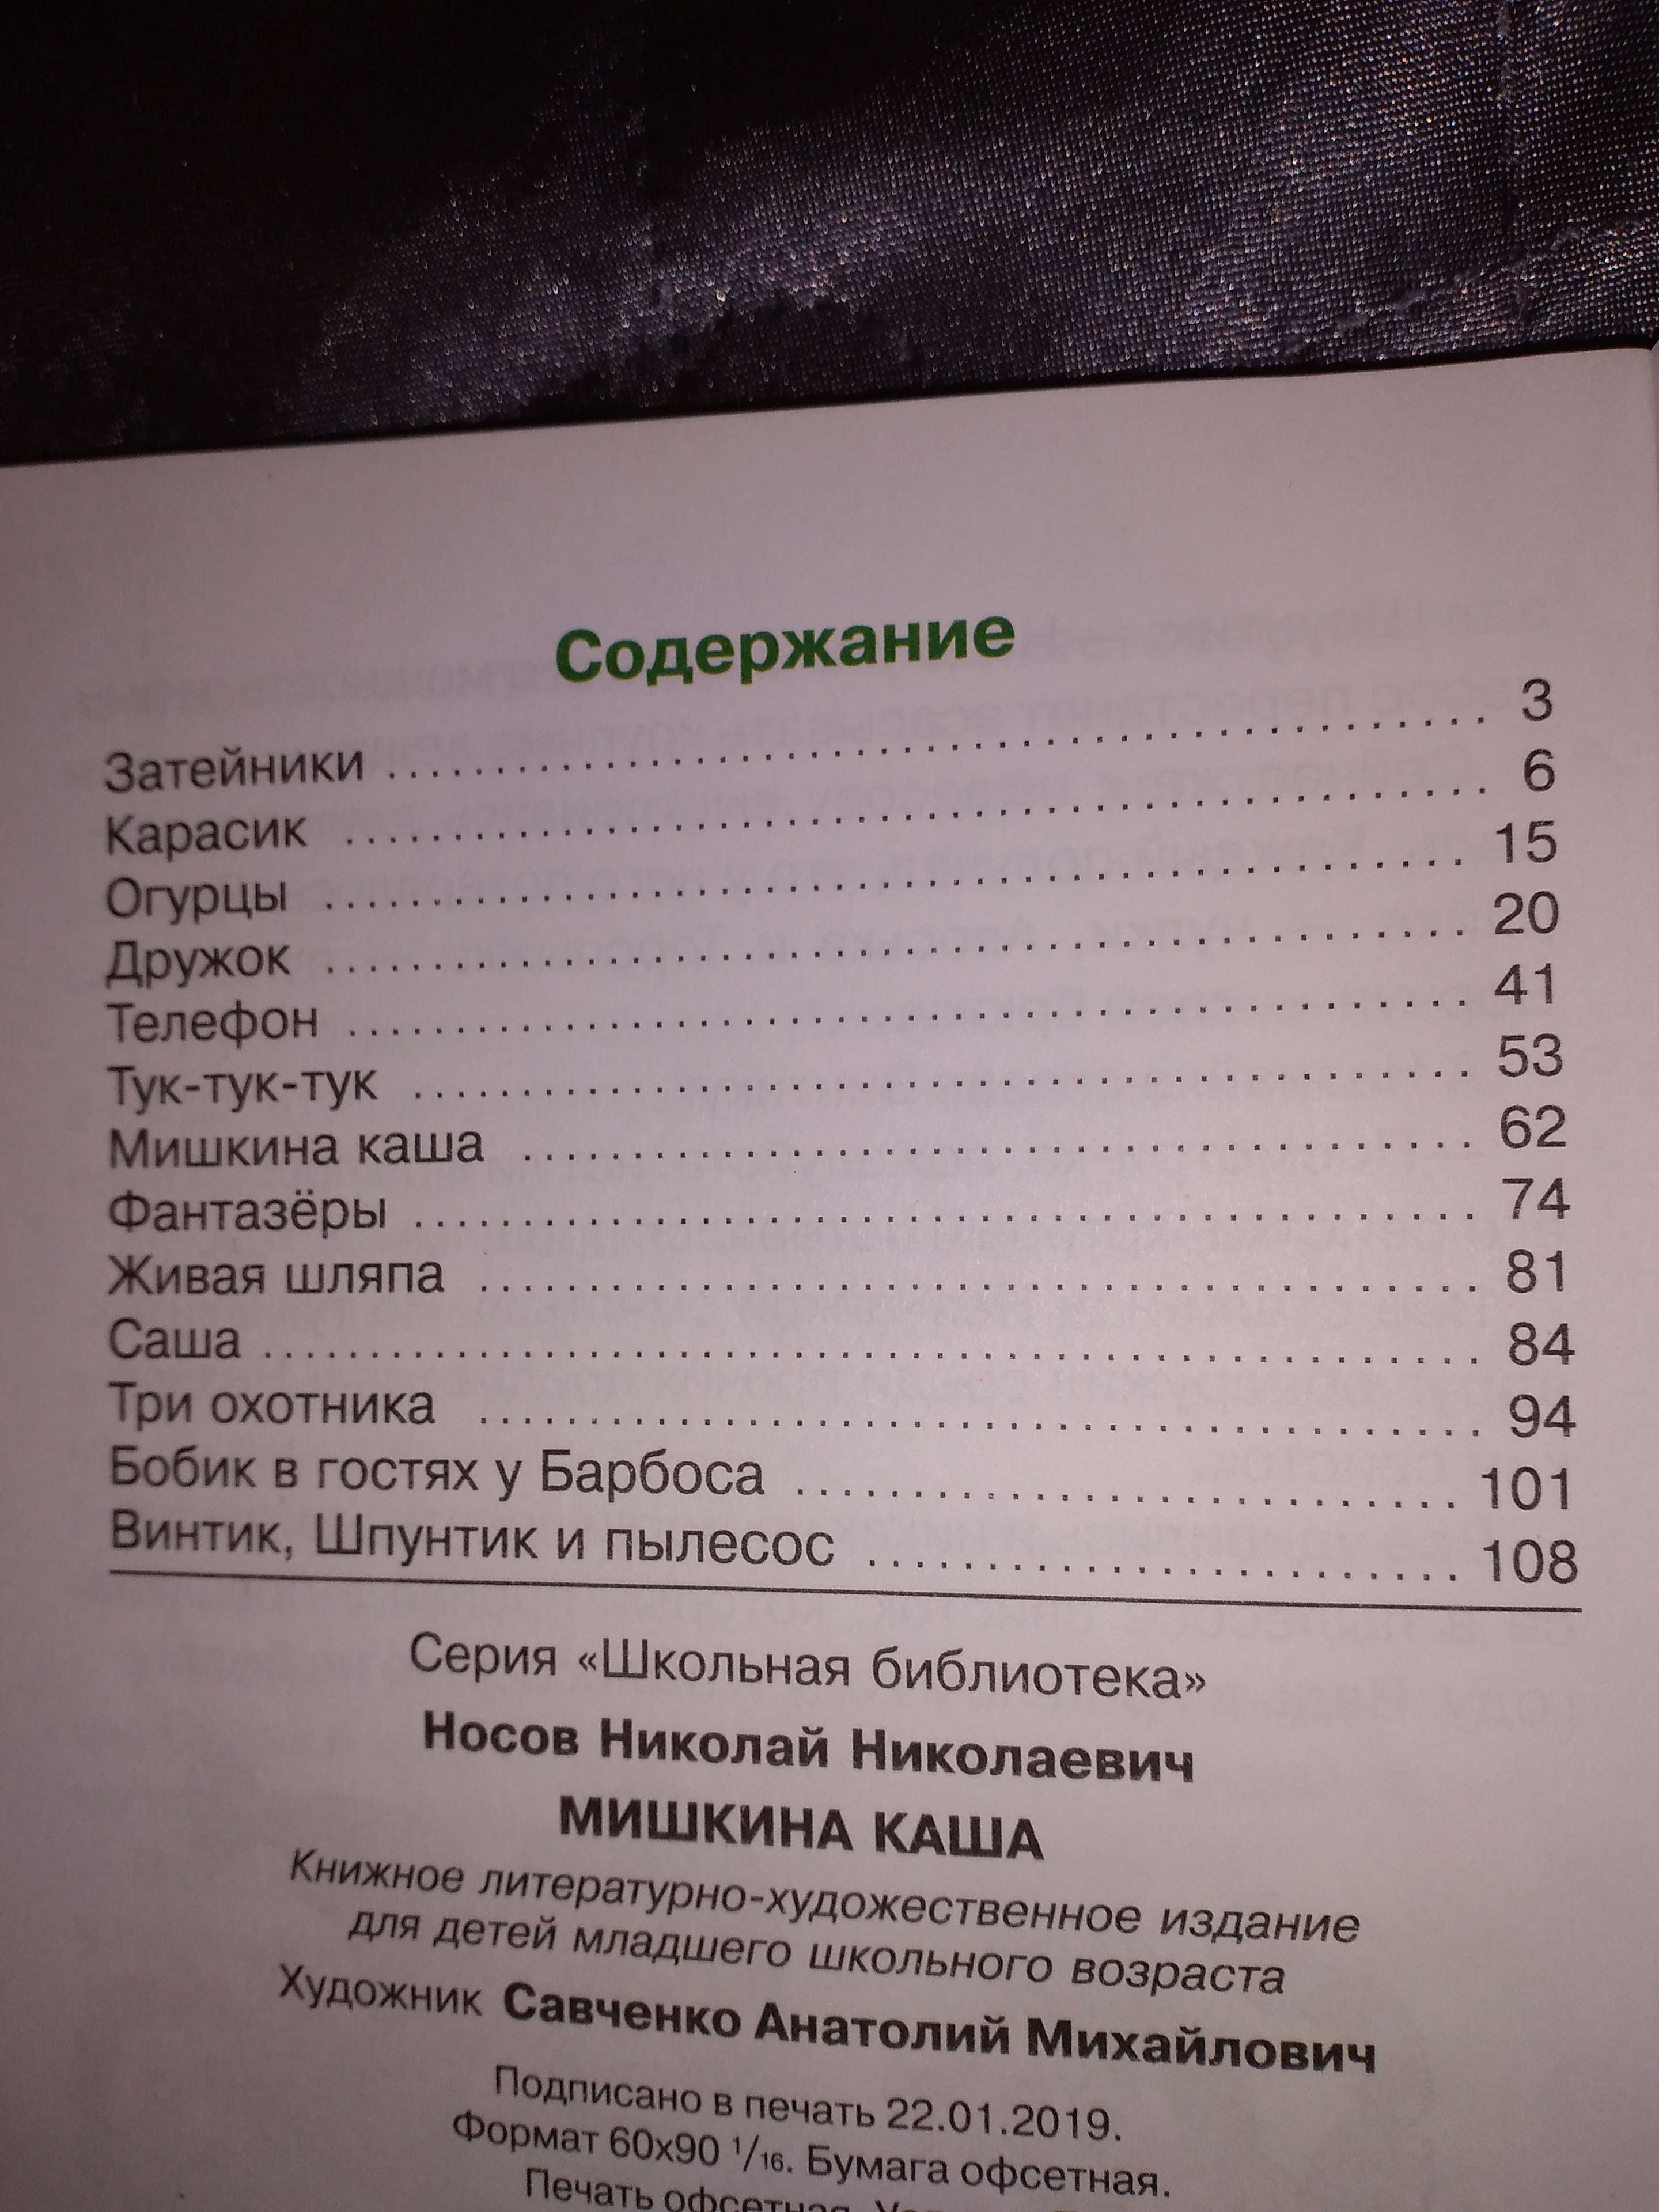 Сколько страниц в рассказе Мишкина каша Носова